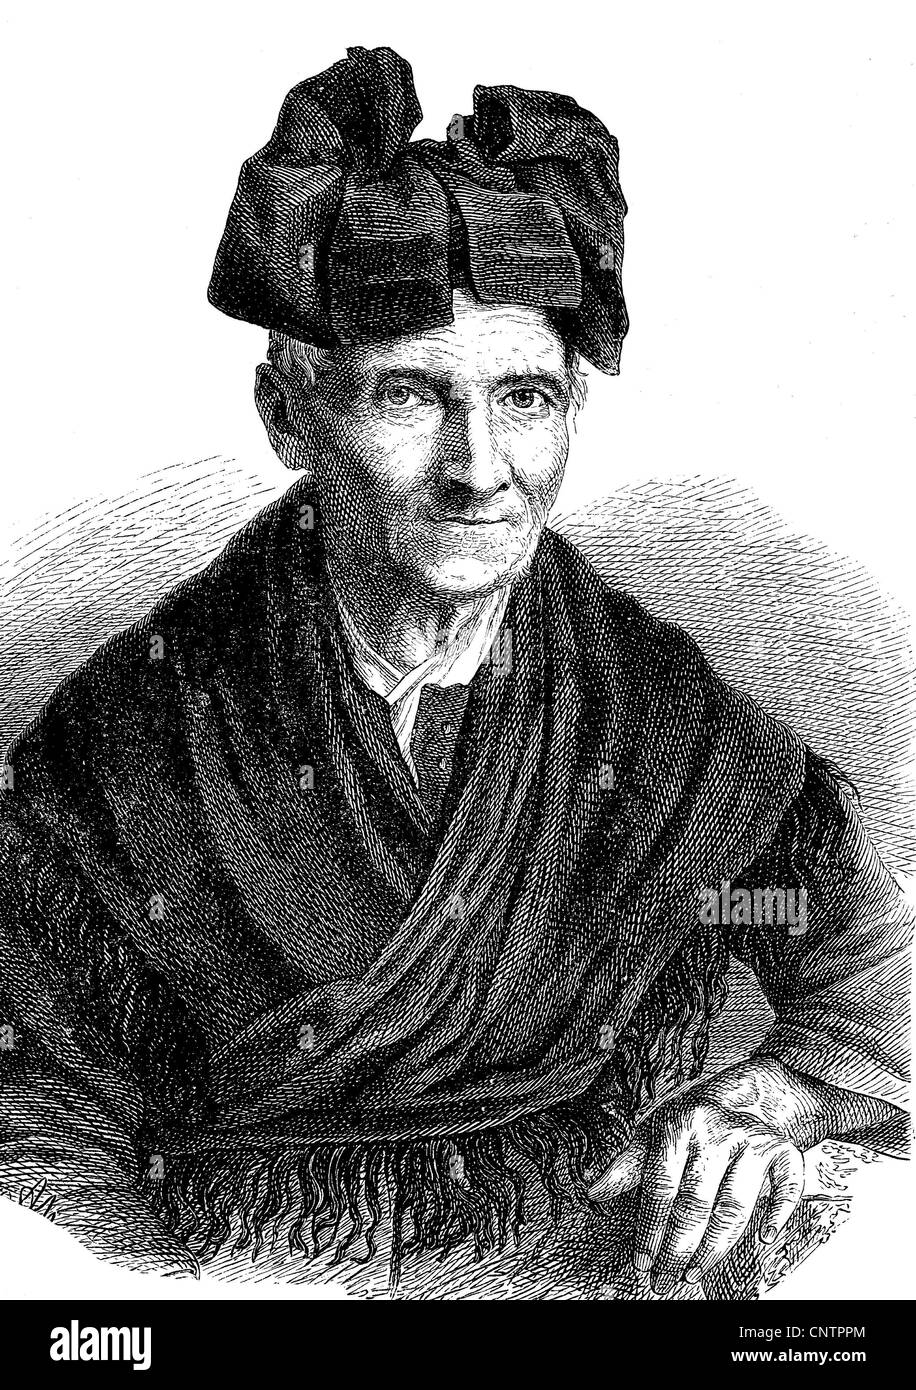 Breneli come una donna anziana, effettivamente Veronica Rohre, 1779 - 1869, storico xilografia, circa 1870 Foto Stock